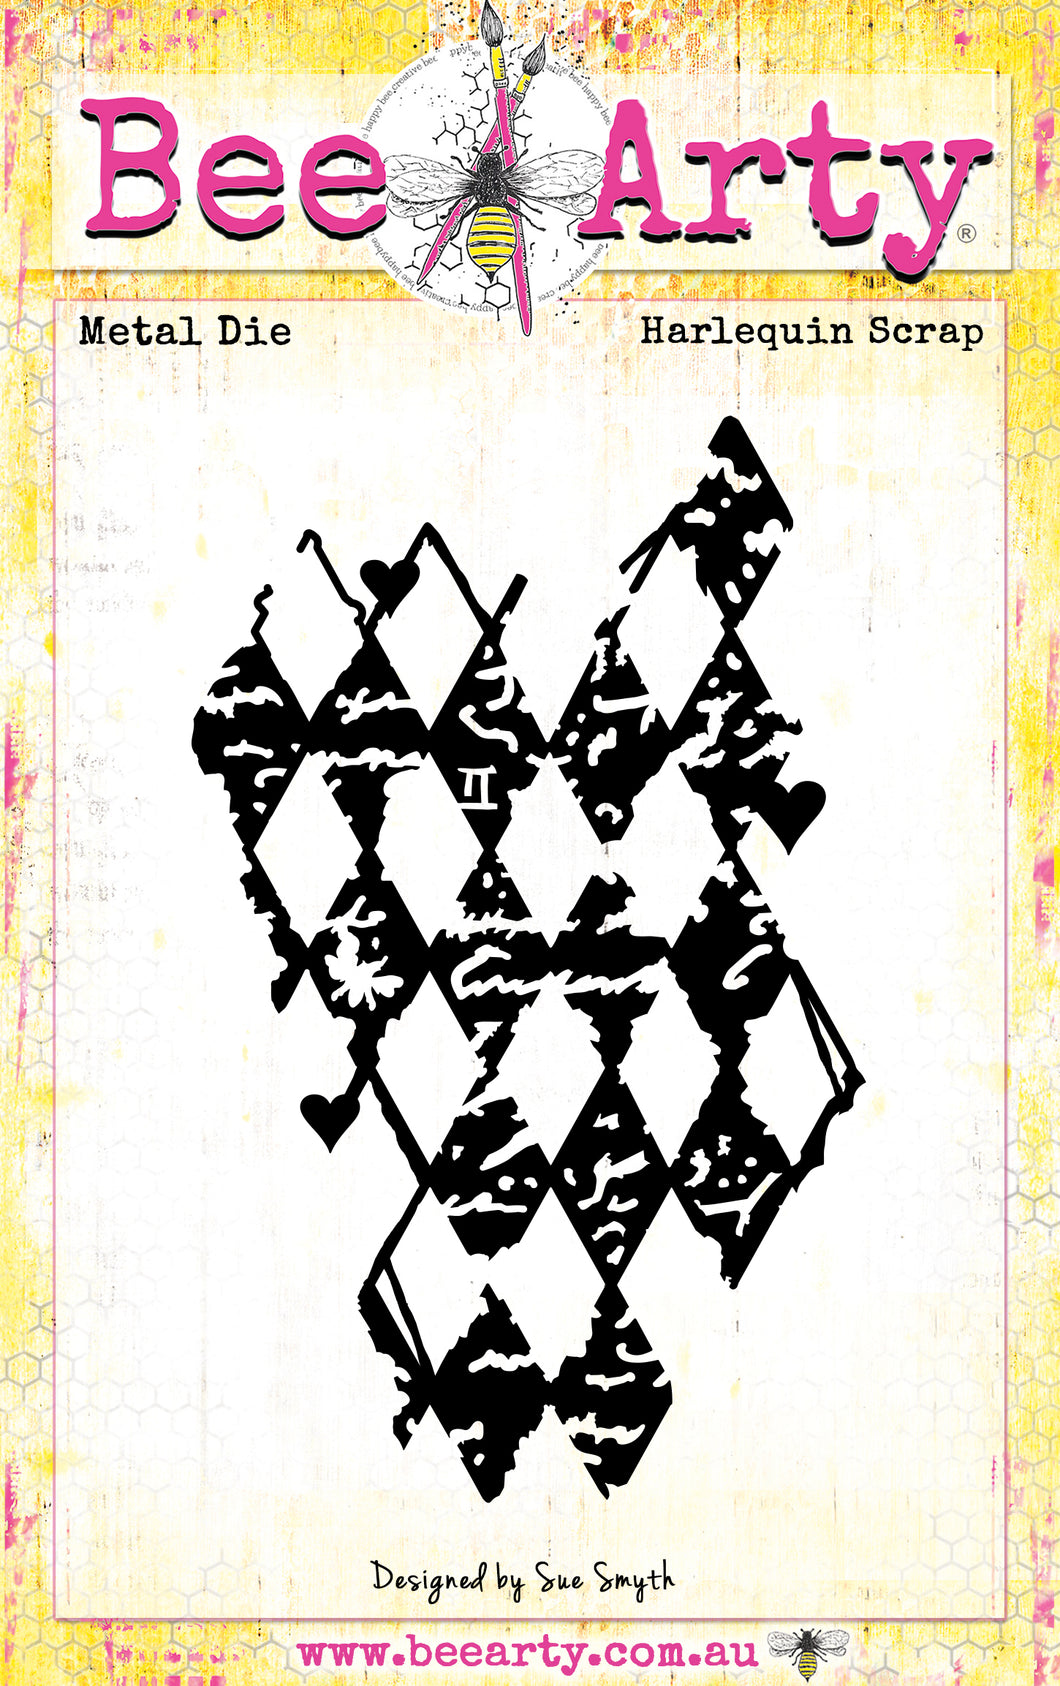 Harlequin Scrap - Metal Die